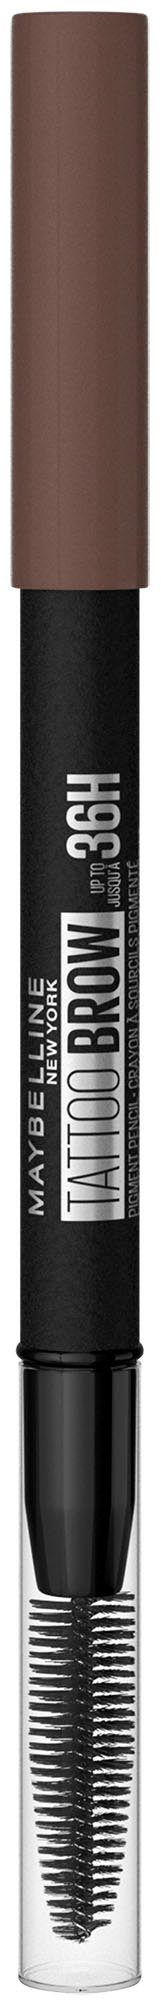 MAYBELLINE NEW 7 Deep YORK Augenbrauen-Stift Formel, Tattoo Bürste, wasserfeste 36H, Brown mit Brow Augen-Make-Up